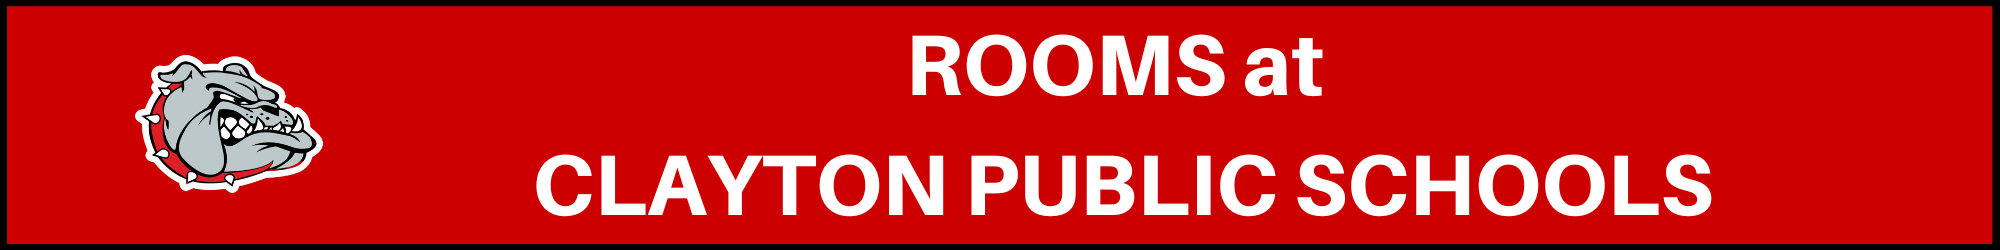 Rooms at Clayton